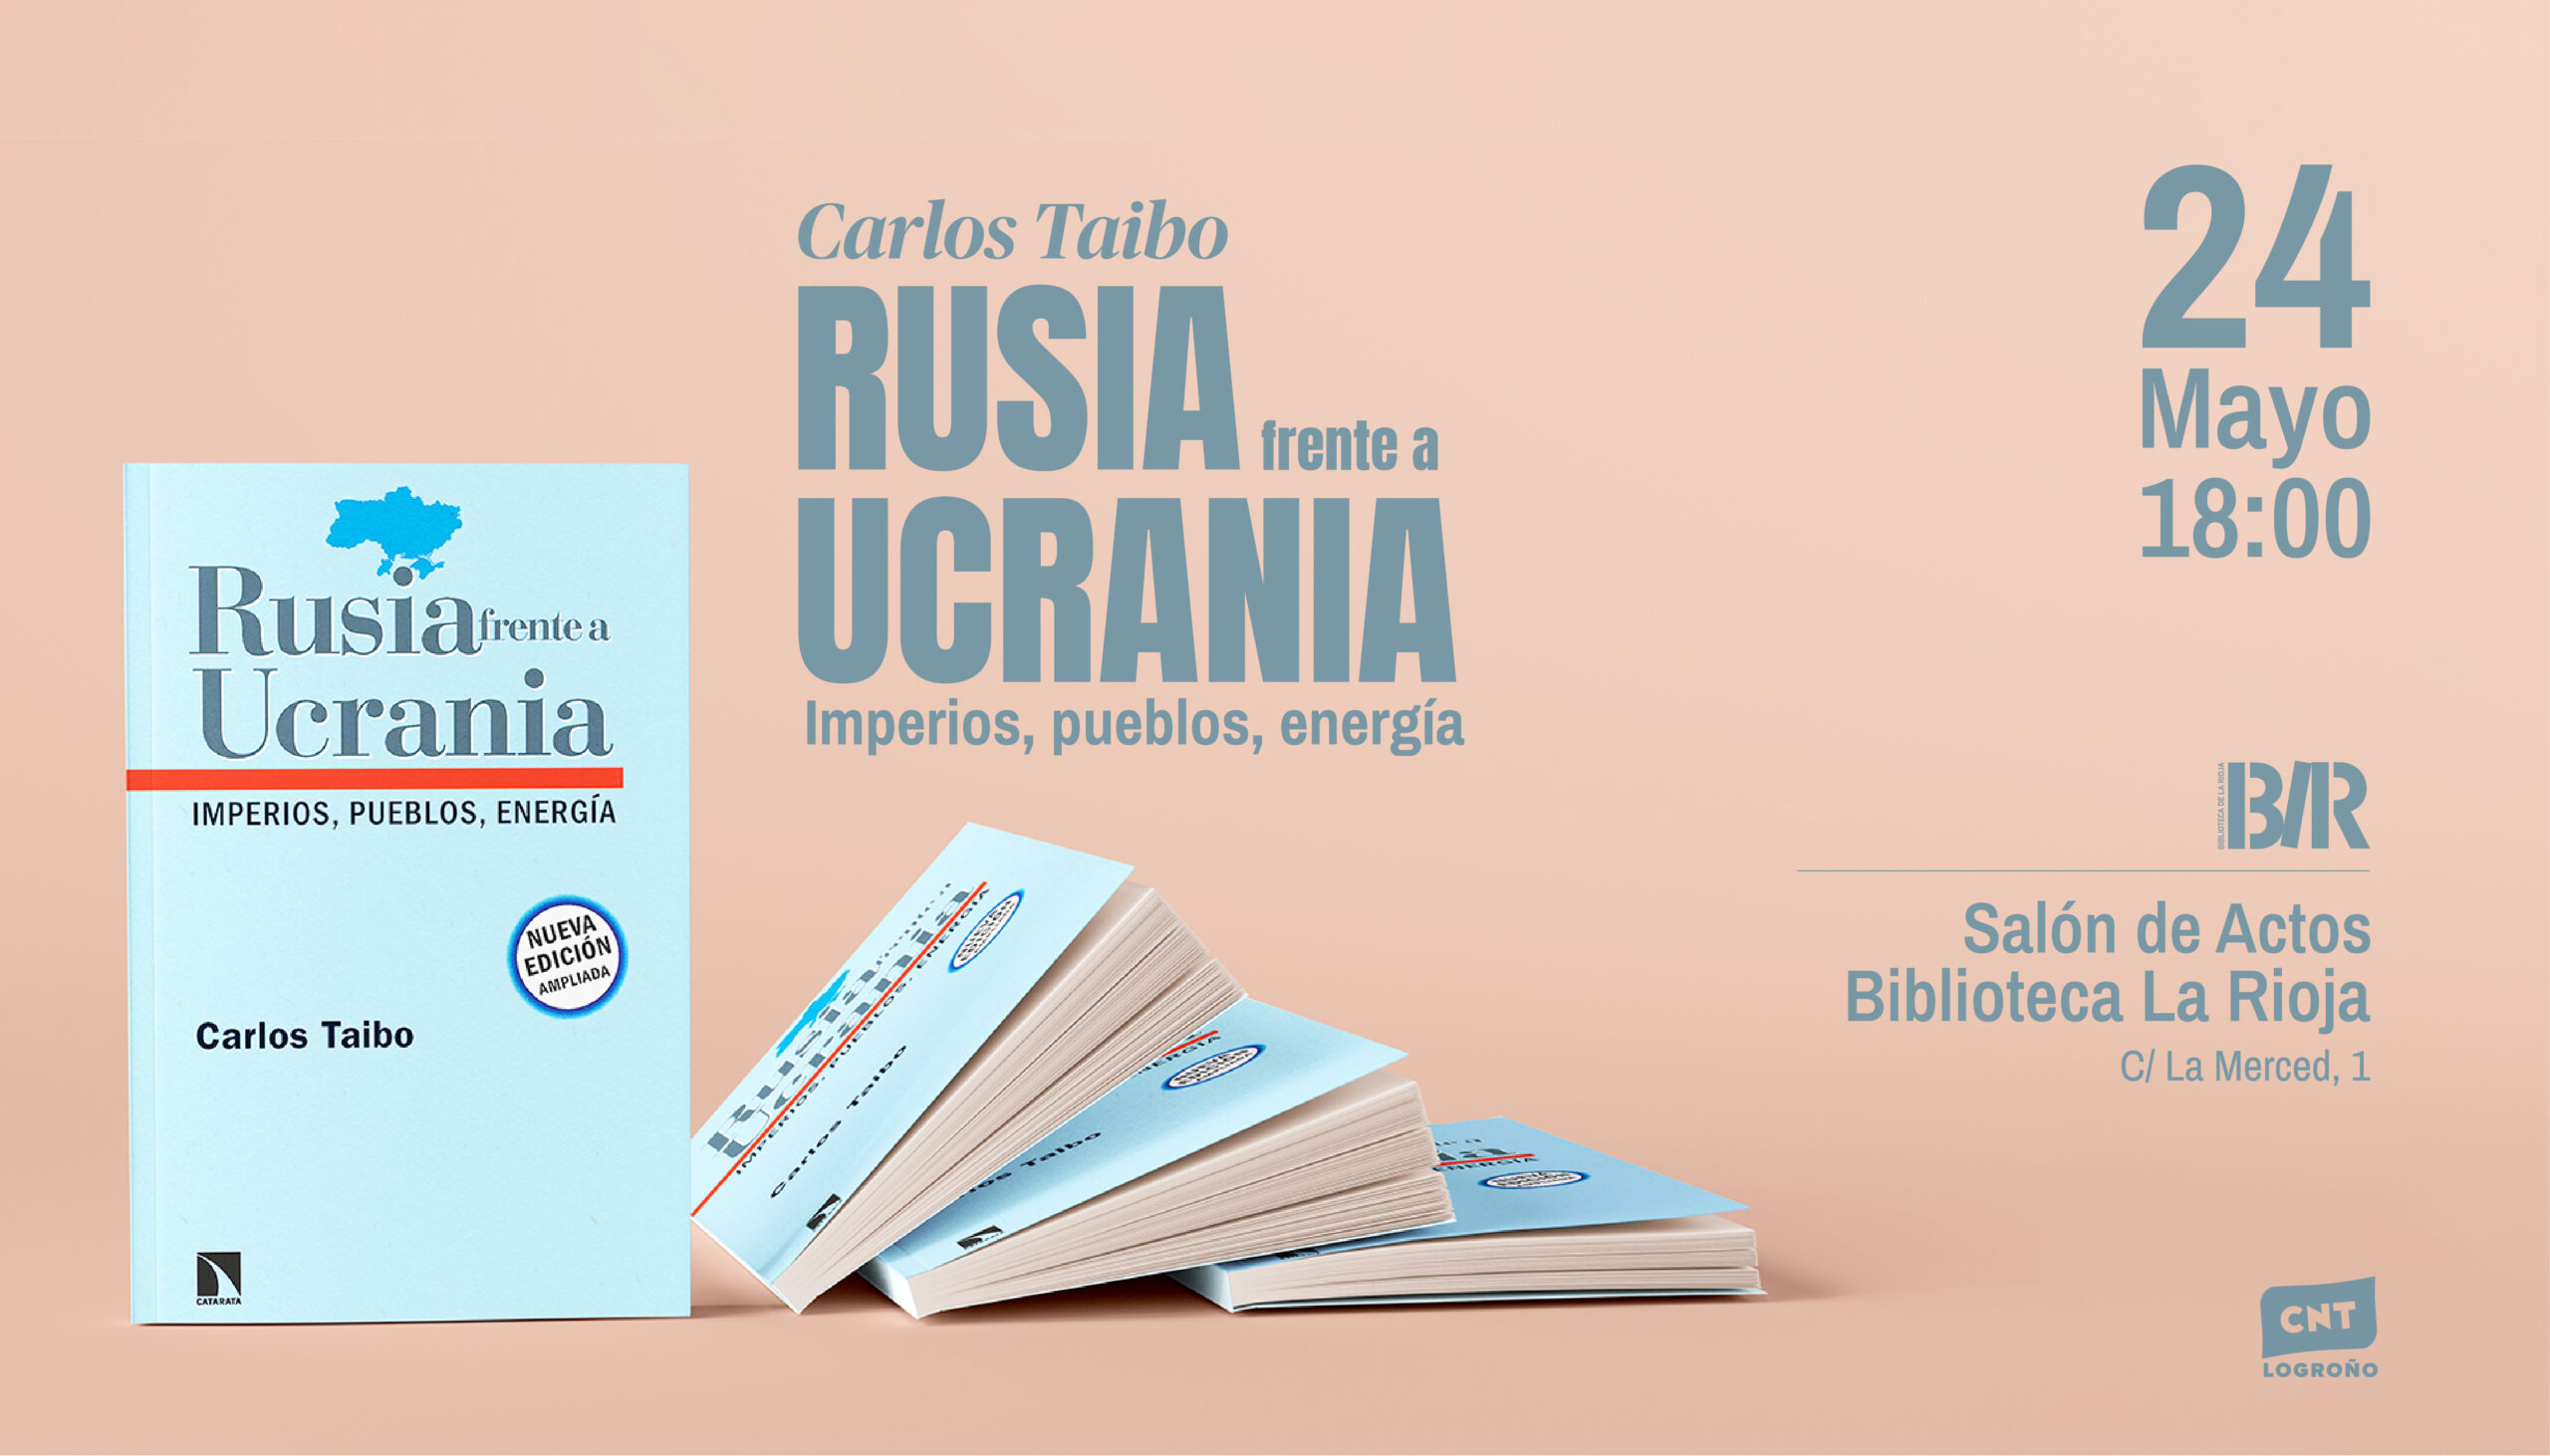 Carlos Taibo presenta en Logroño su libro «Rusia frente a Ucrania» de la mano de CNT Logroño